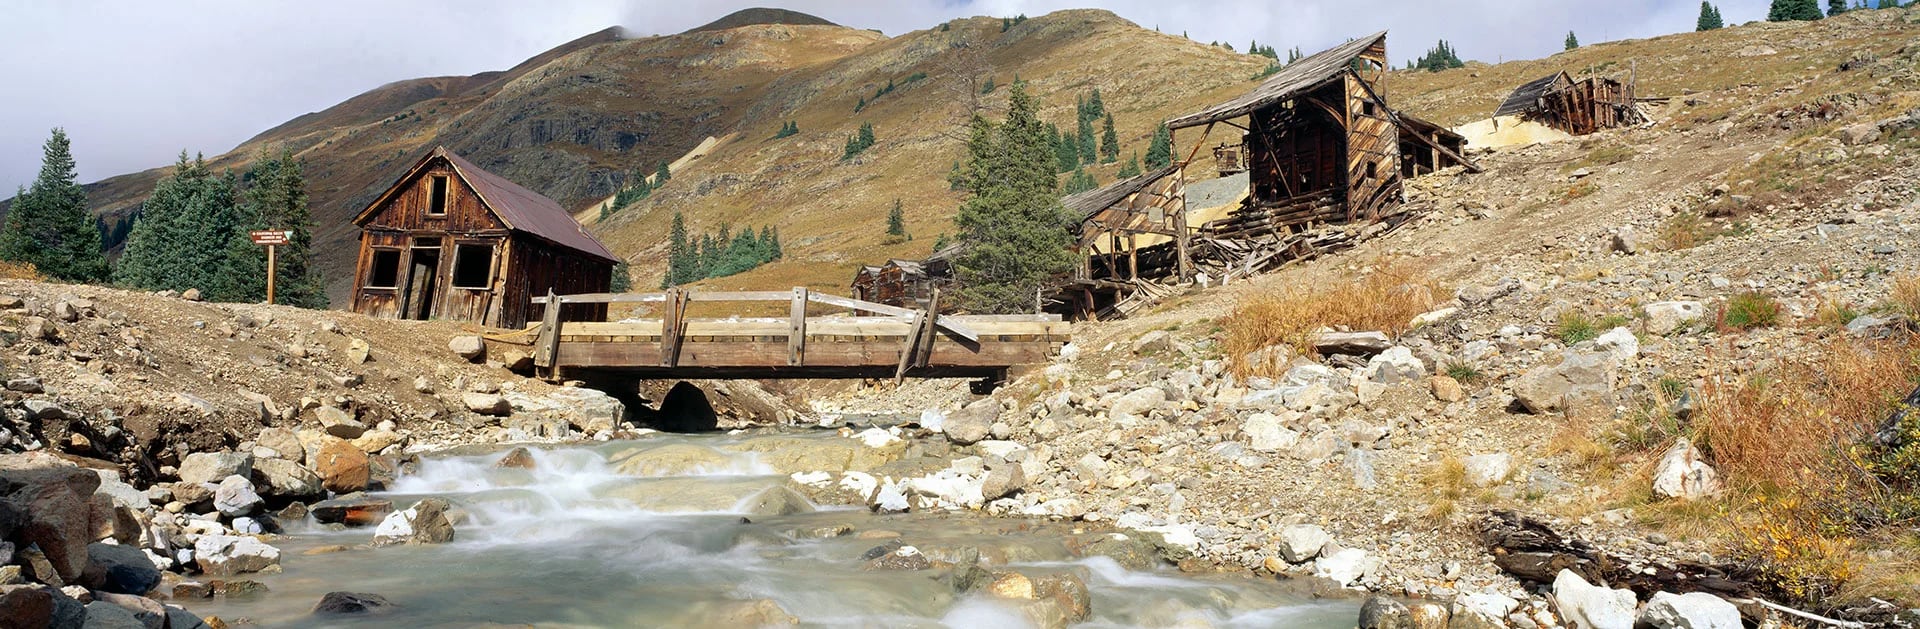 Lo que una vez fue una bulliciosa ciudad minera en el Alpine Loop de Colorado ahora es un pedazo desolado de tierra, escenario de unos pocos edificios decrépitos